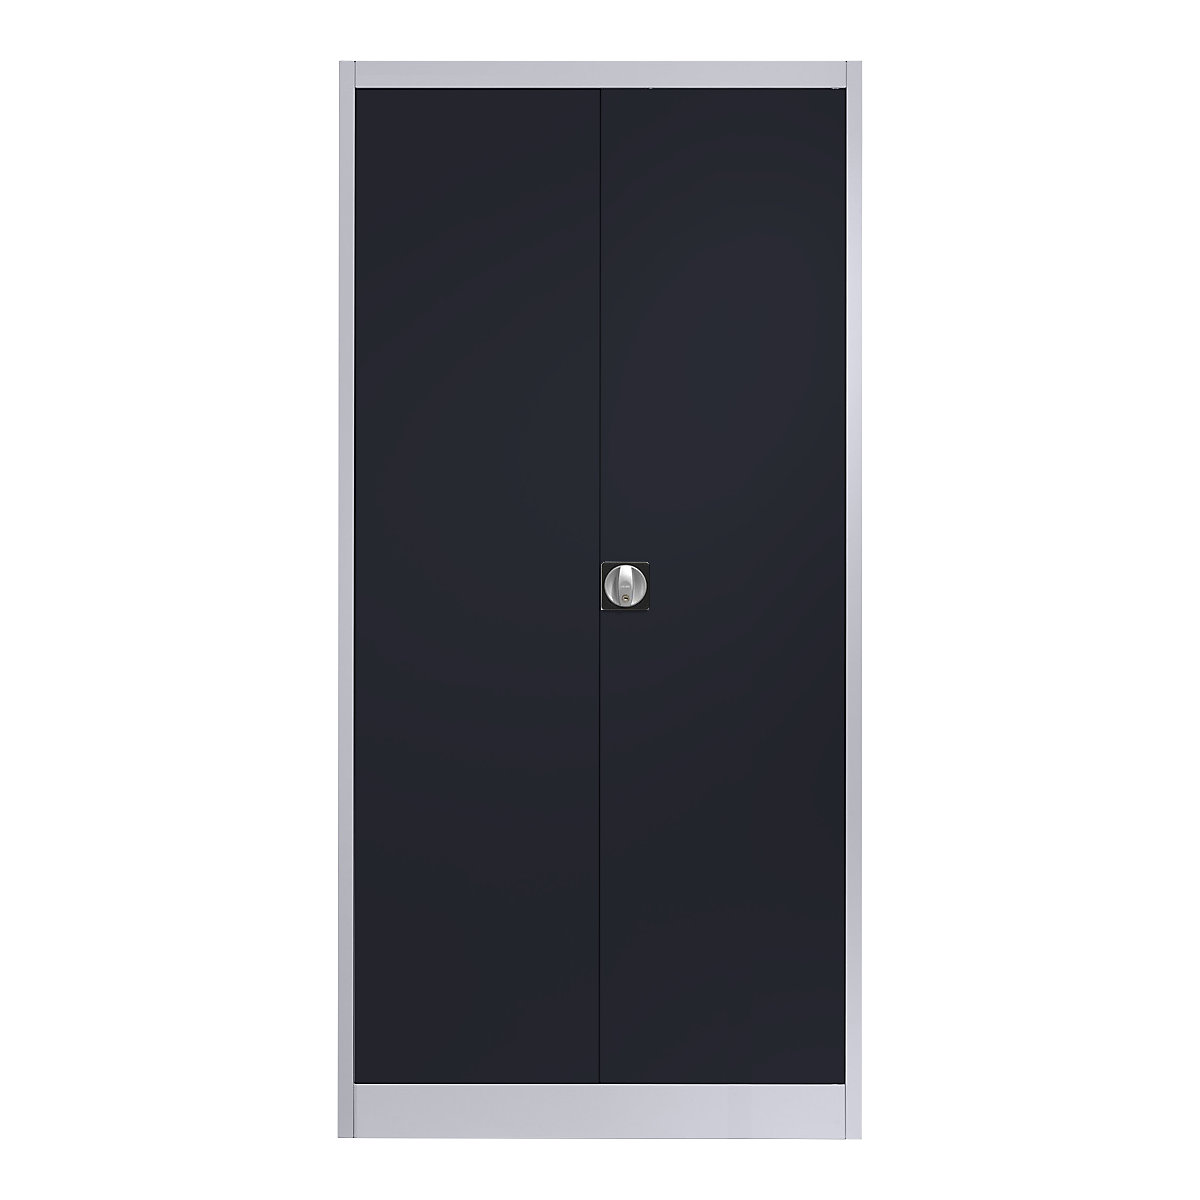 Jeklena omara s krilnimi vrati – mauser, 4 police, G 420 mm, belo aluminijast / antracitno siv-5